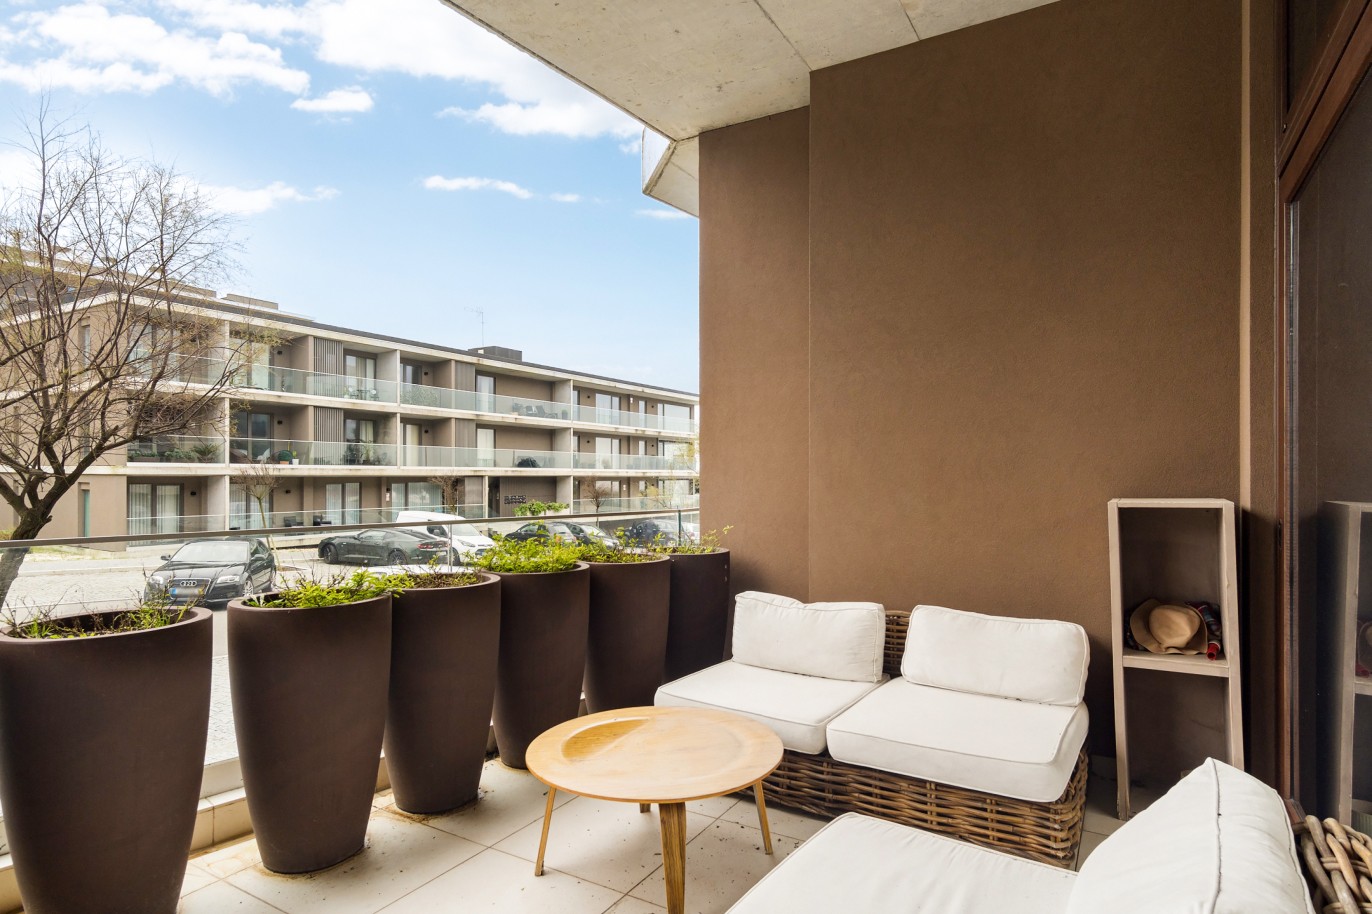 Verkauf: Wohnung mit Balkon in der 1. Meereslinie, Canidelo, V. N. Gaia, Portugal_215347